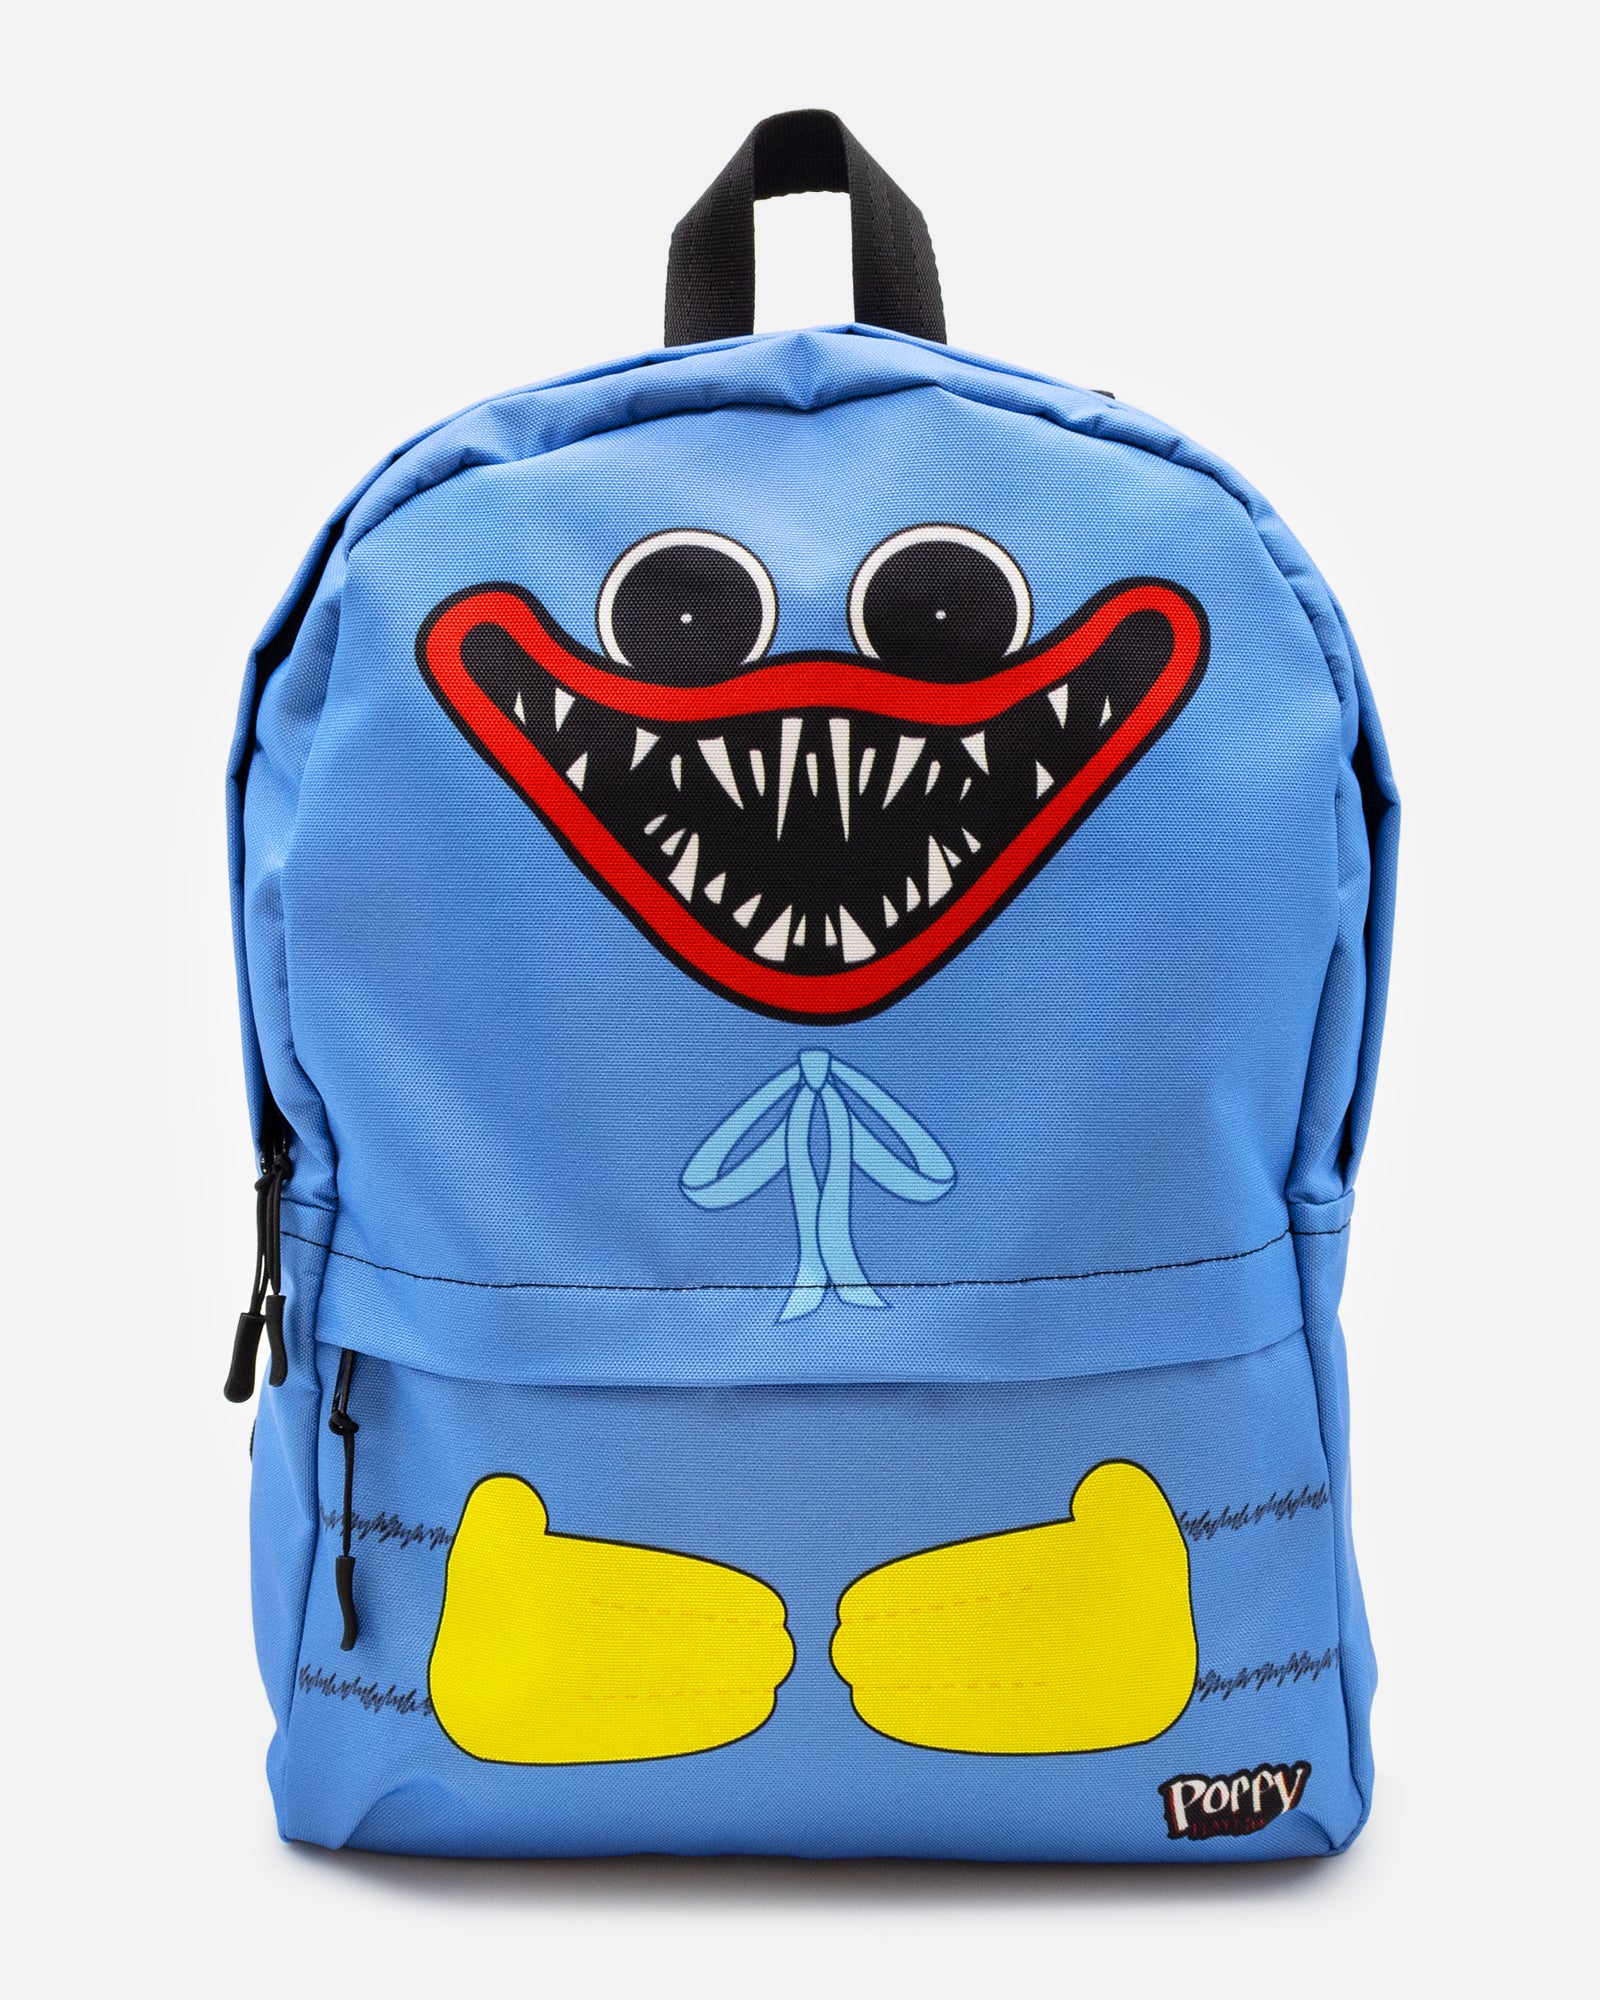 Boxy Boo Backpack